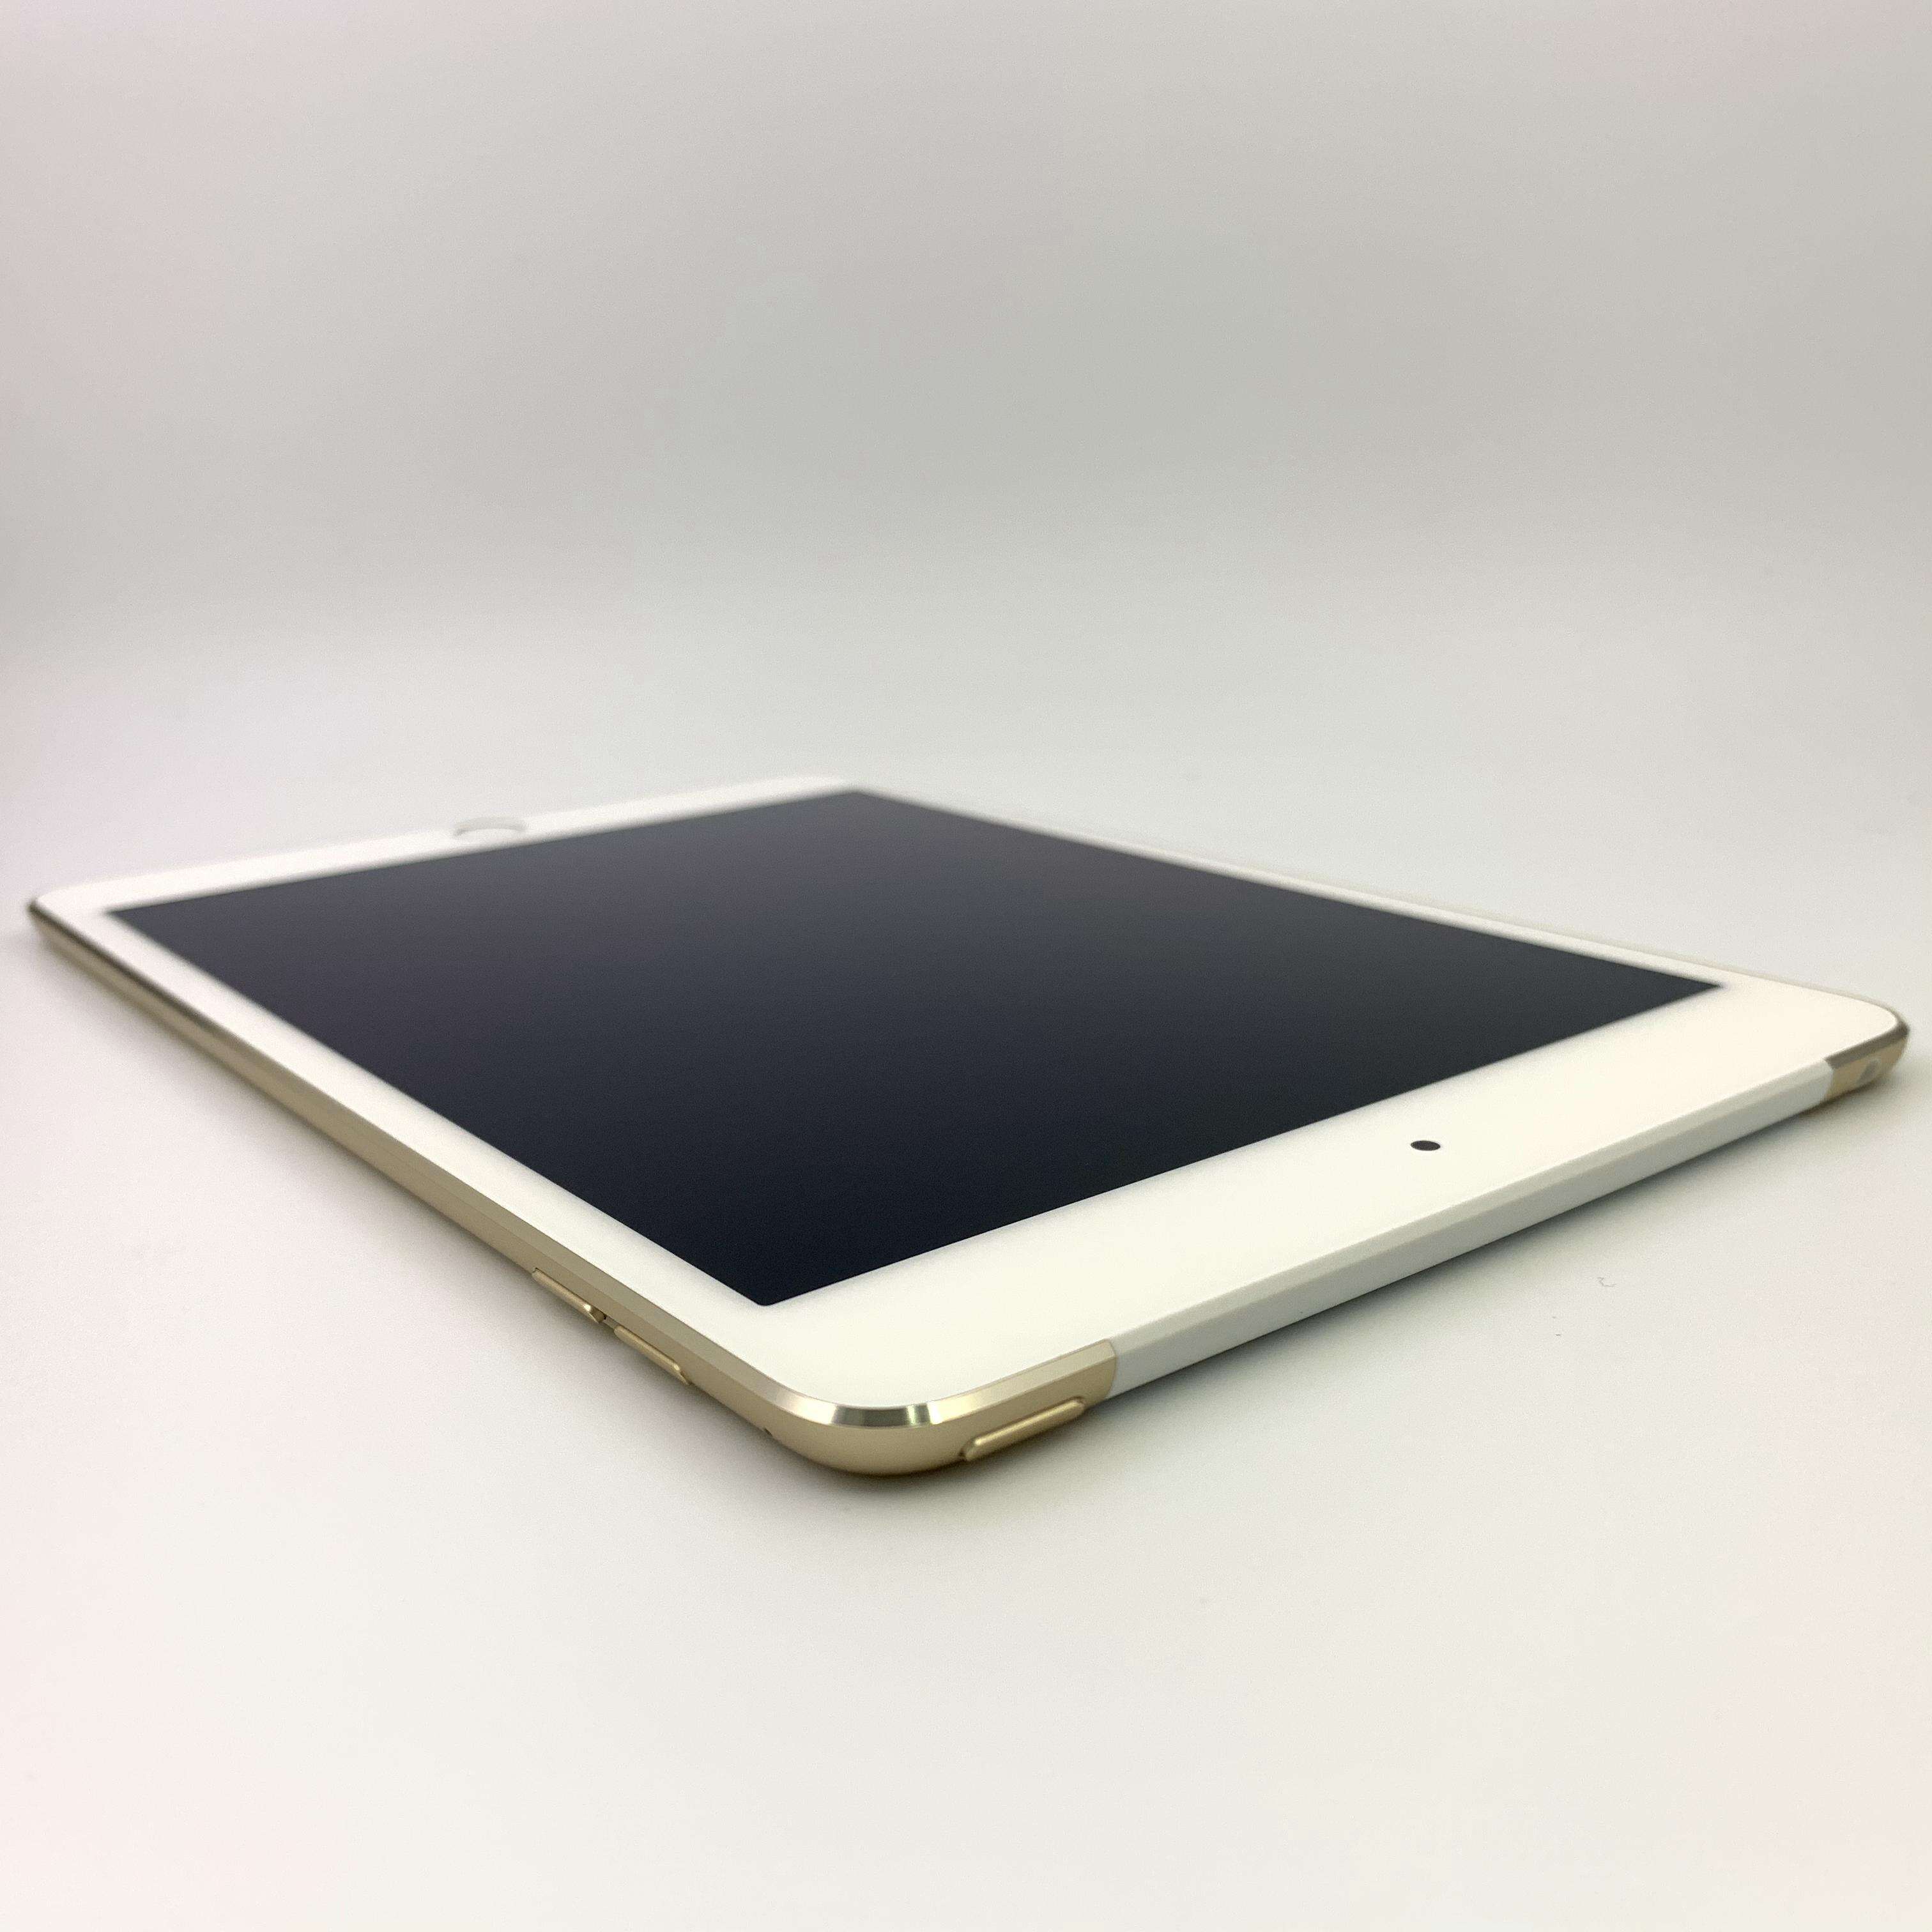 iPad mini 4 128G Cellular版 移动4G/联通4G/电信4G